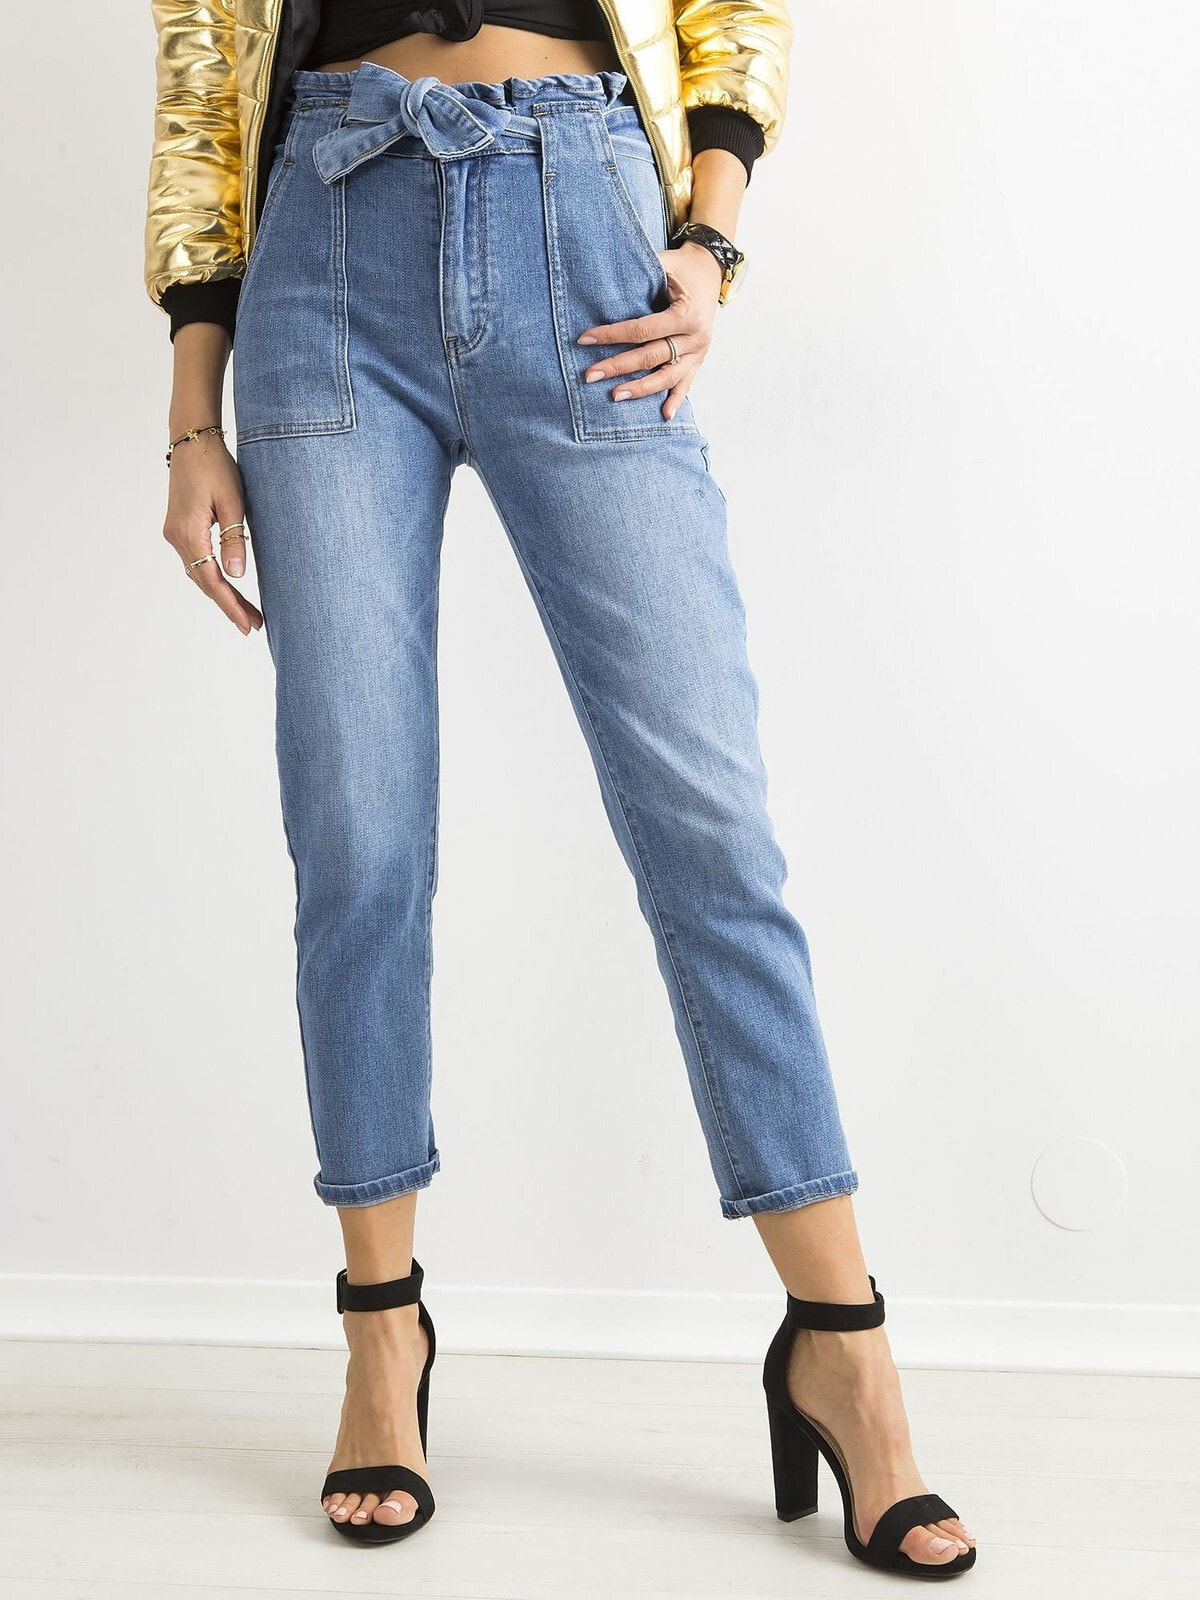 Женские джинсы  Mom-fit  с высокой посадкой укороченные голубой Factory Price